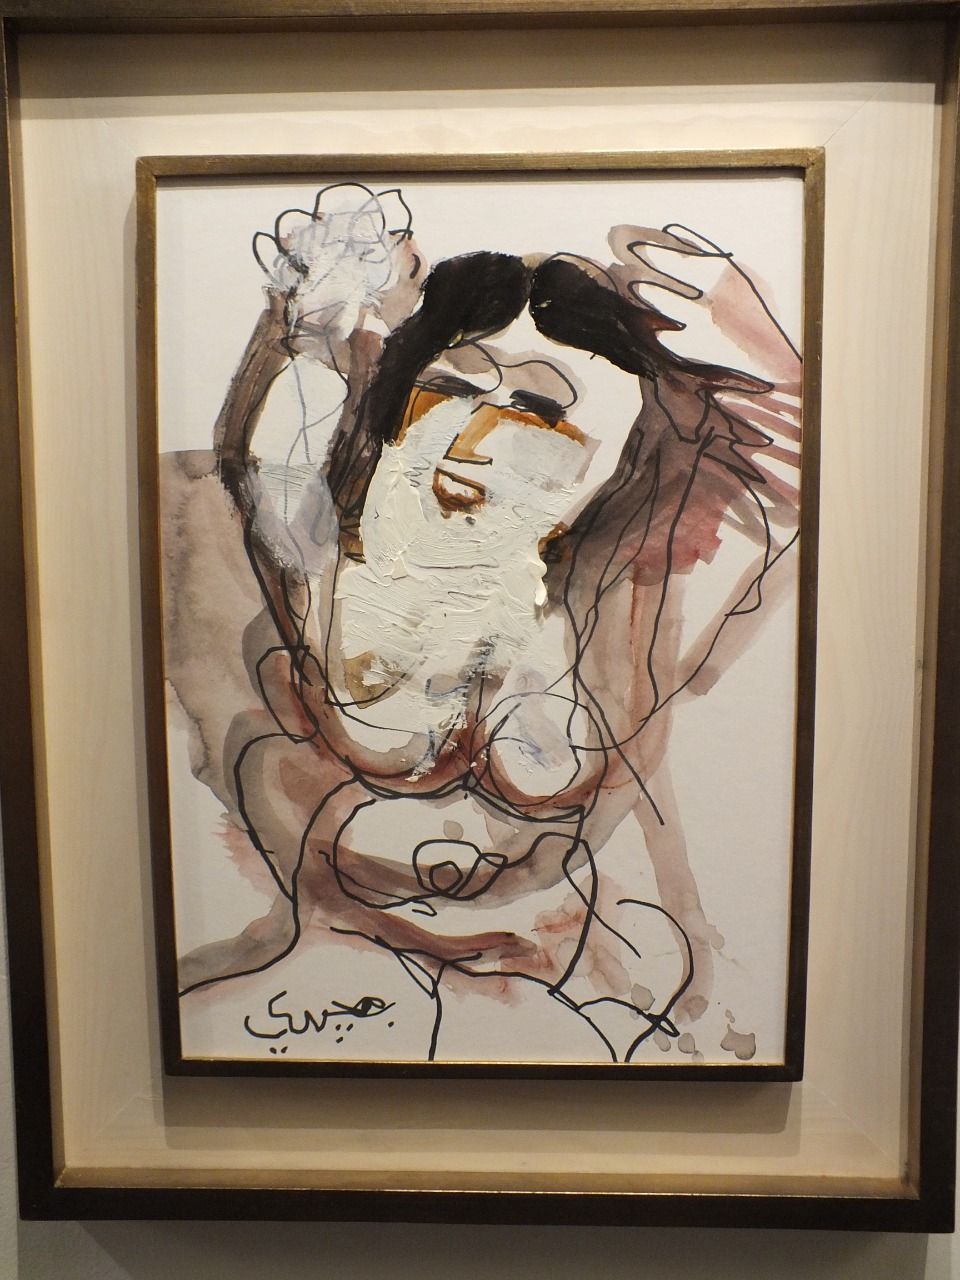 لوحة للفنان المصري جورج بهجوري - - الدورة الثانية من معرض مصر الدولي للفنون 